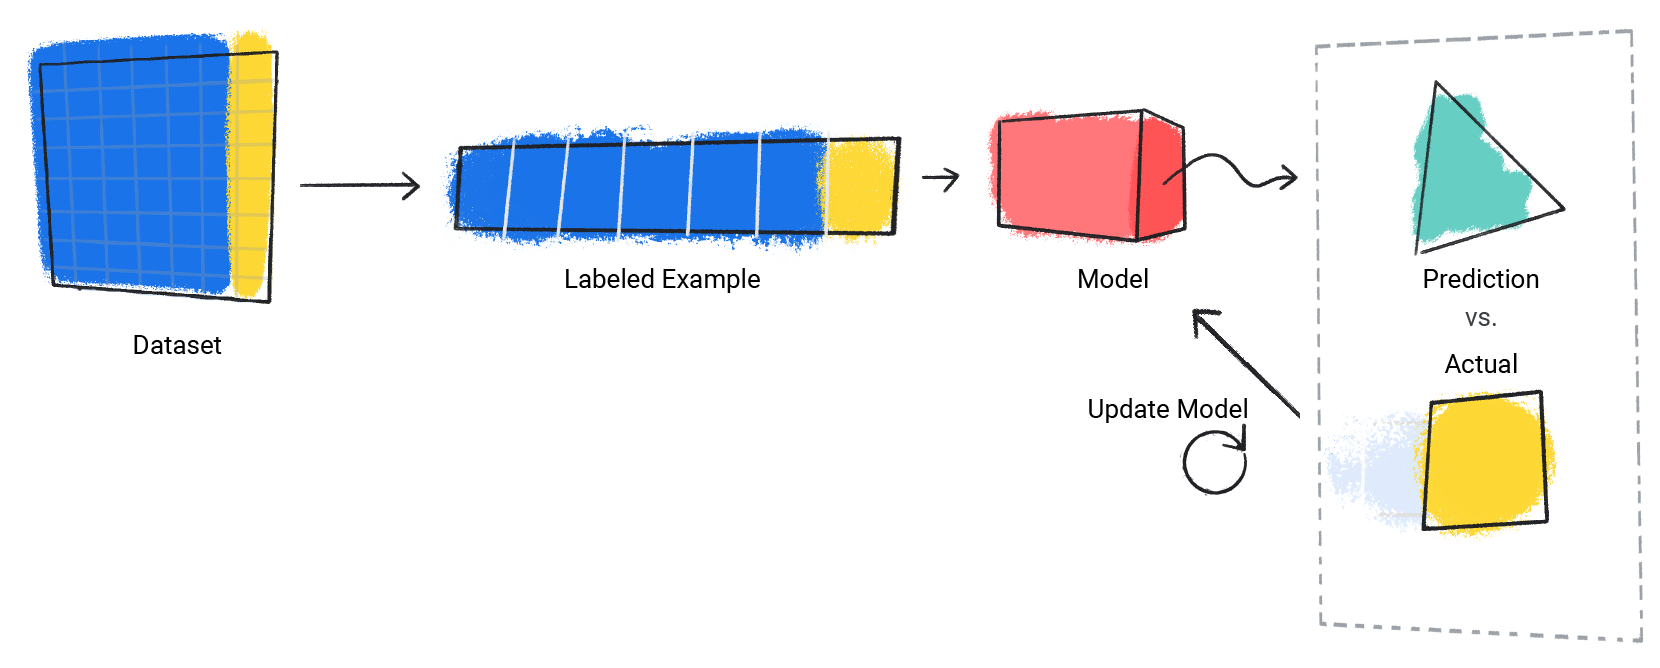 ऐसी इमेज जिसमें मॉडल अपने अनुमान की प्रोसेस को बार-बार दोहराता है और असल वैल्यू की तुलना करता है.